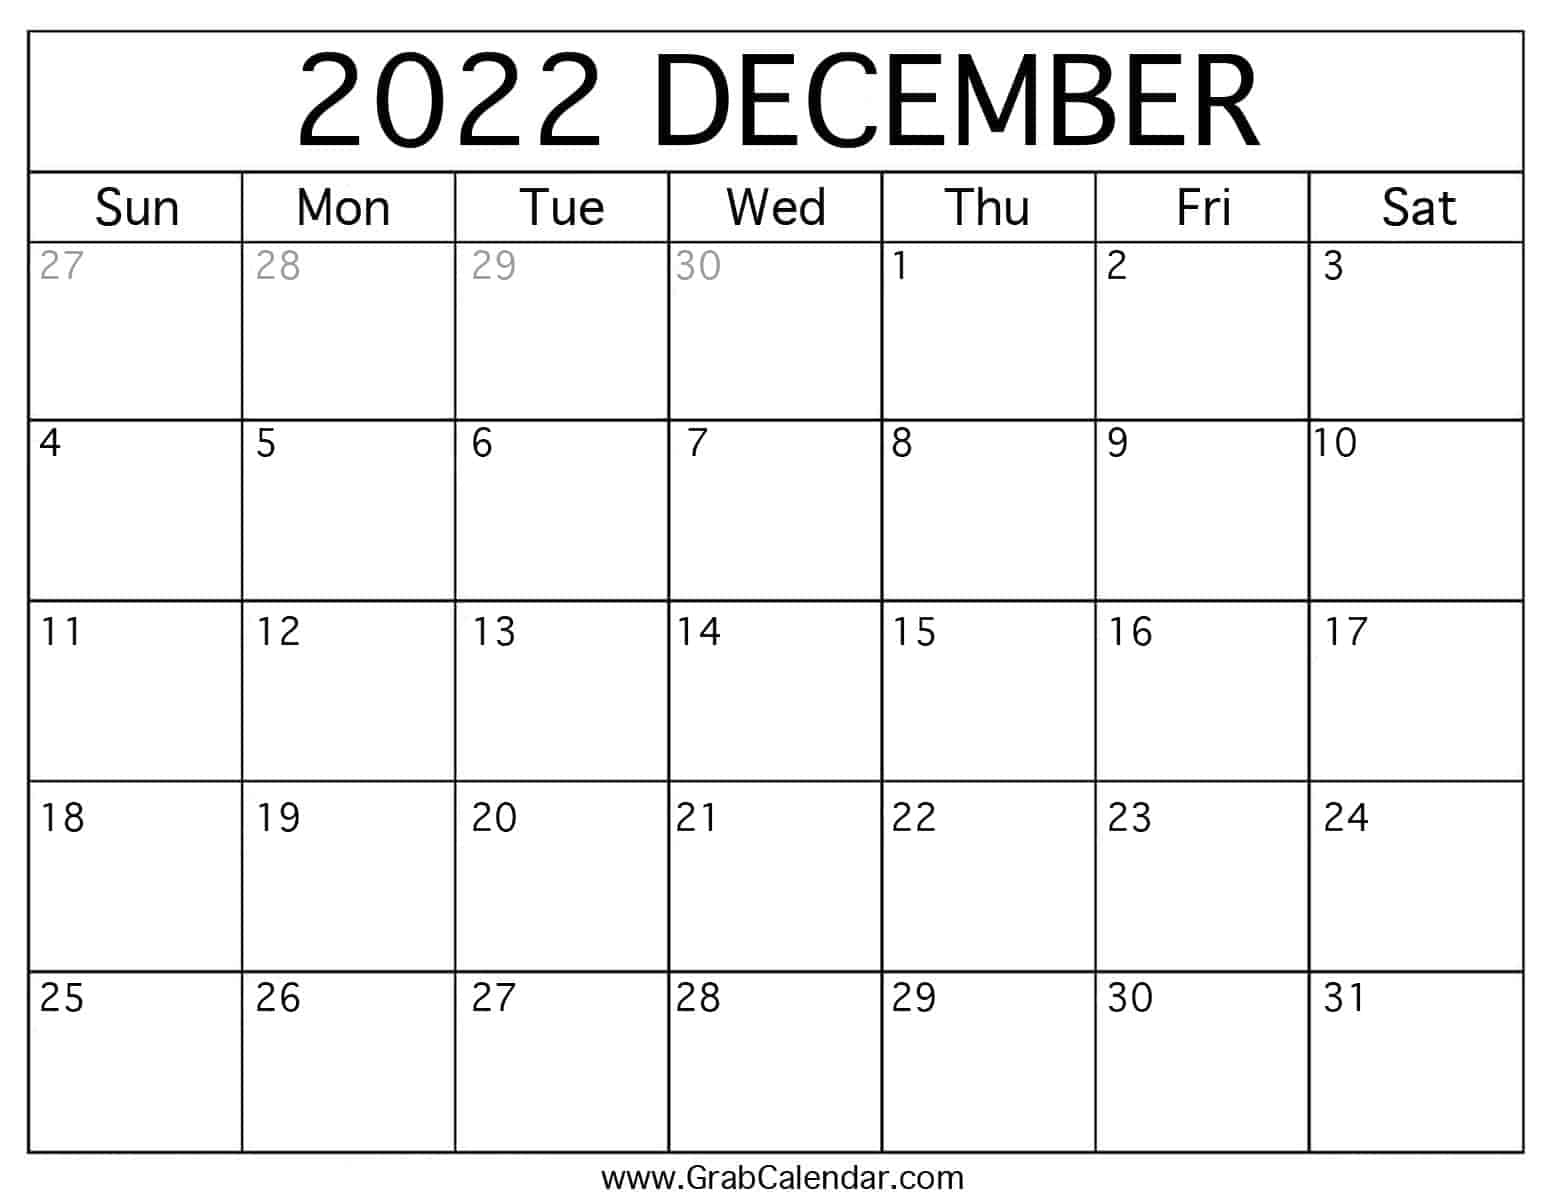 Dec 2022 Calendar With Holidays Printable December 2022 Calendar